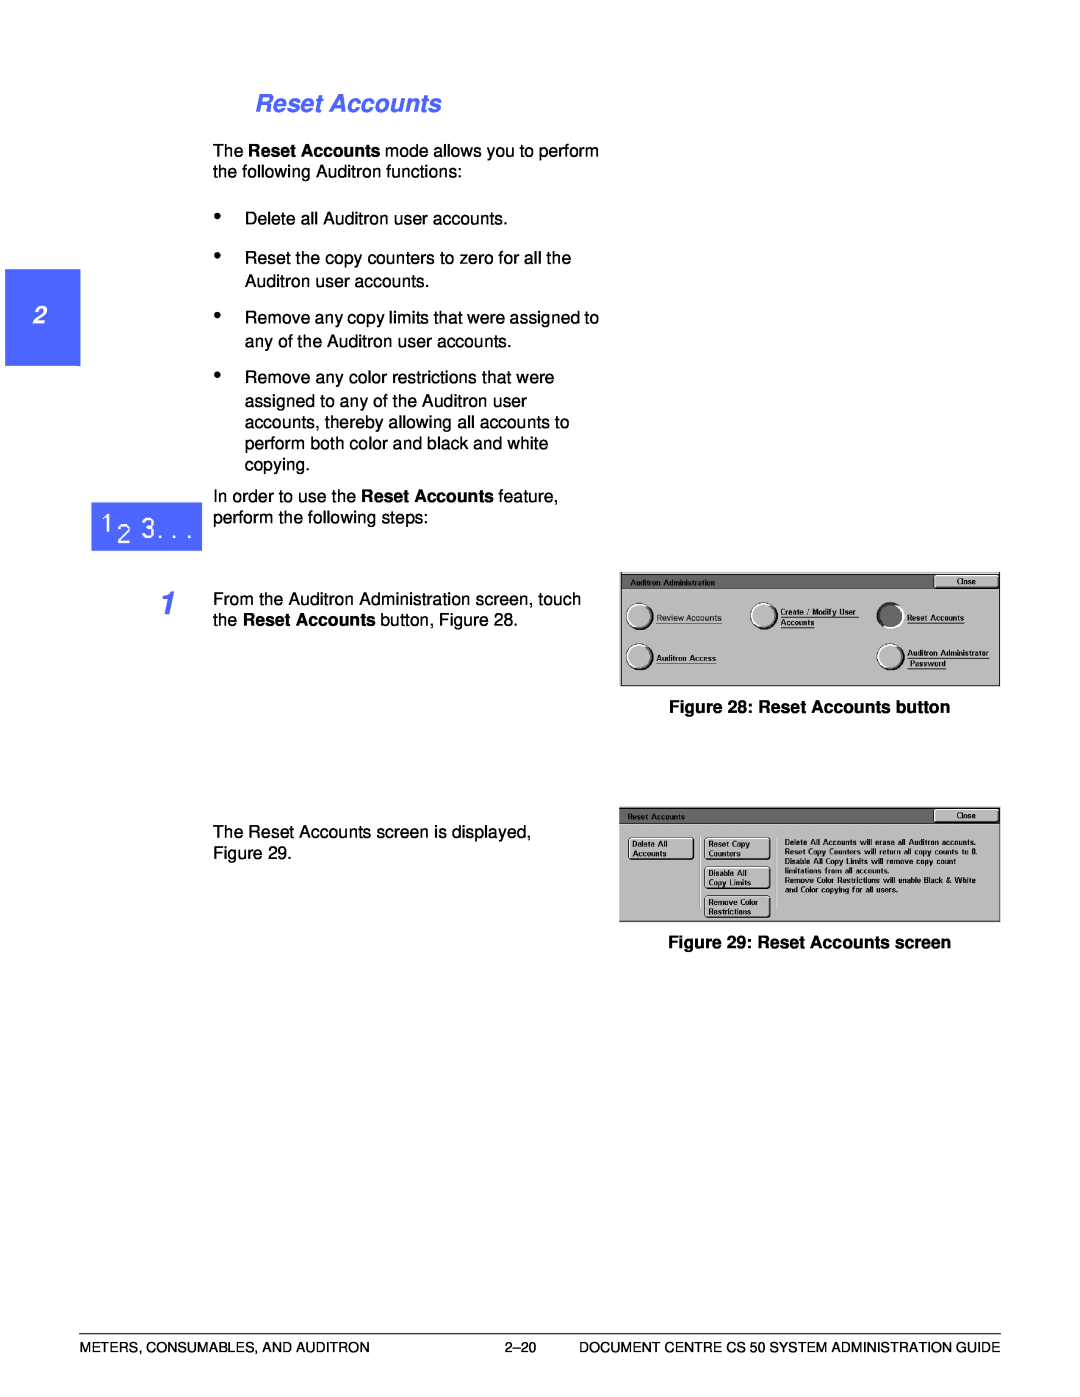 Xerox 50 manual 1 22 4 5 6 7, Reset Accounts button, Reset Accounts screen 